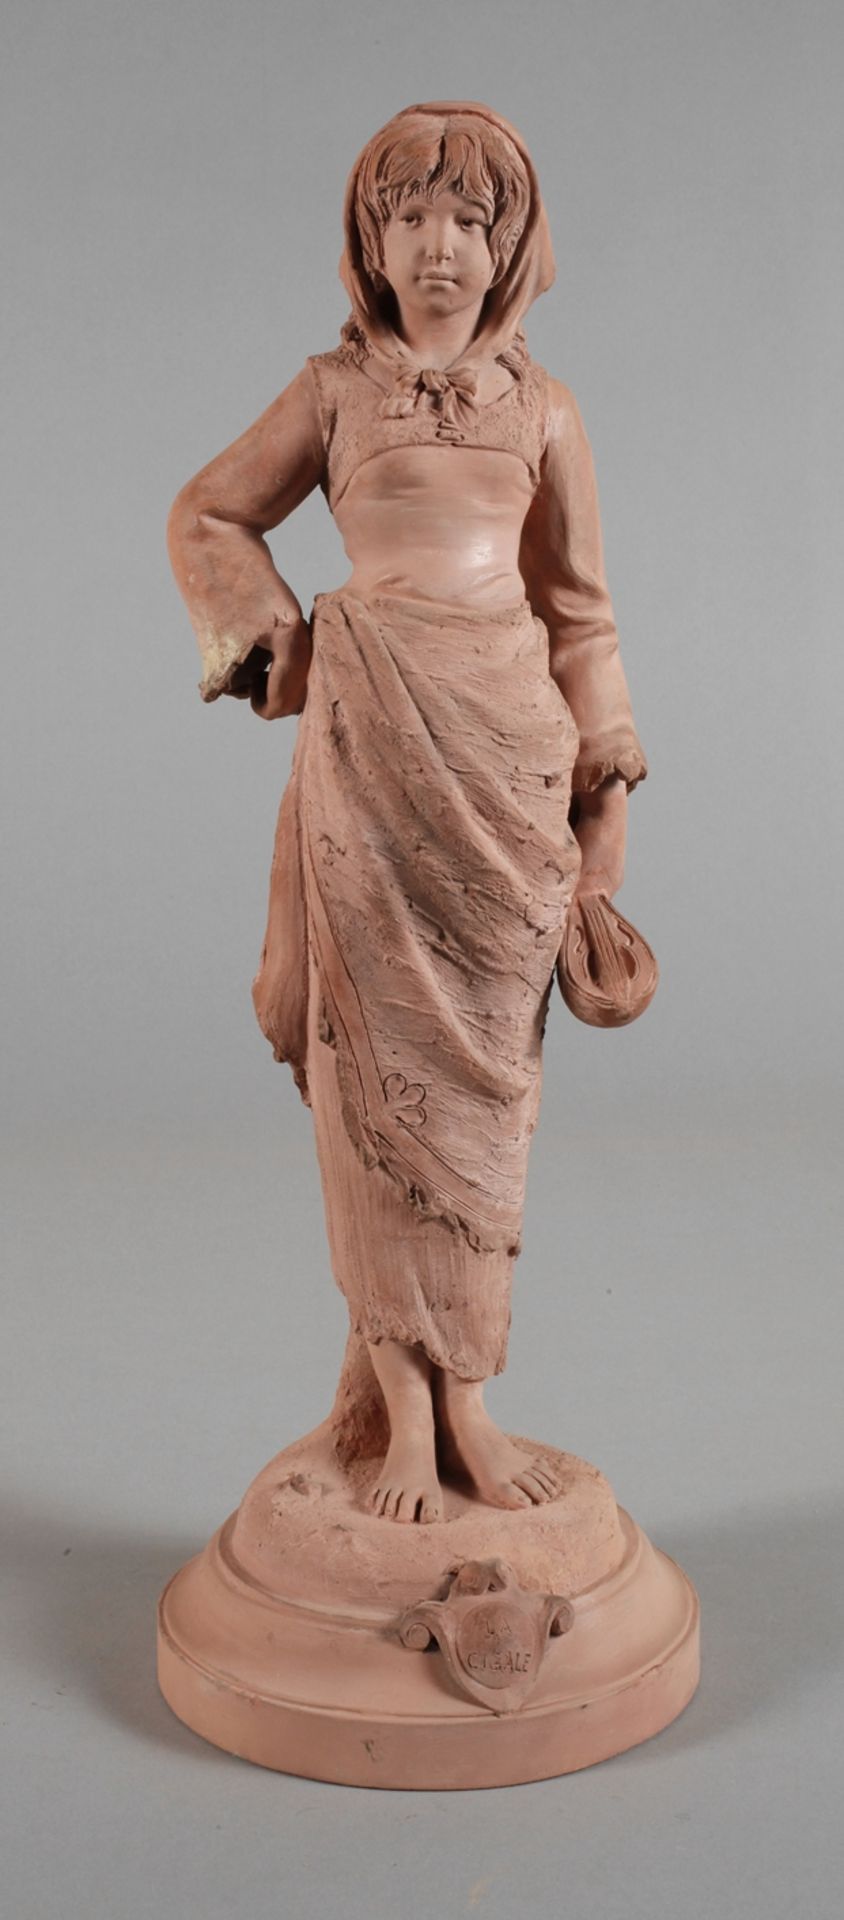 Henry Weisse, terracotta figure "La Cigale"